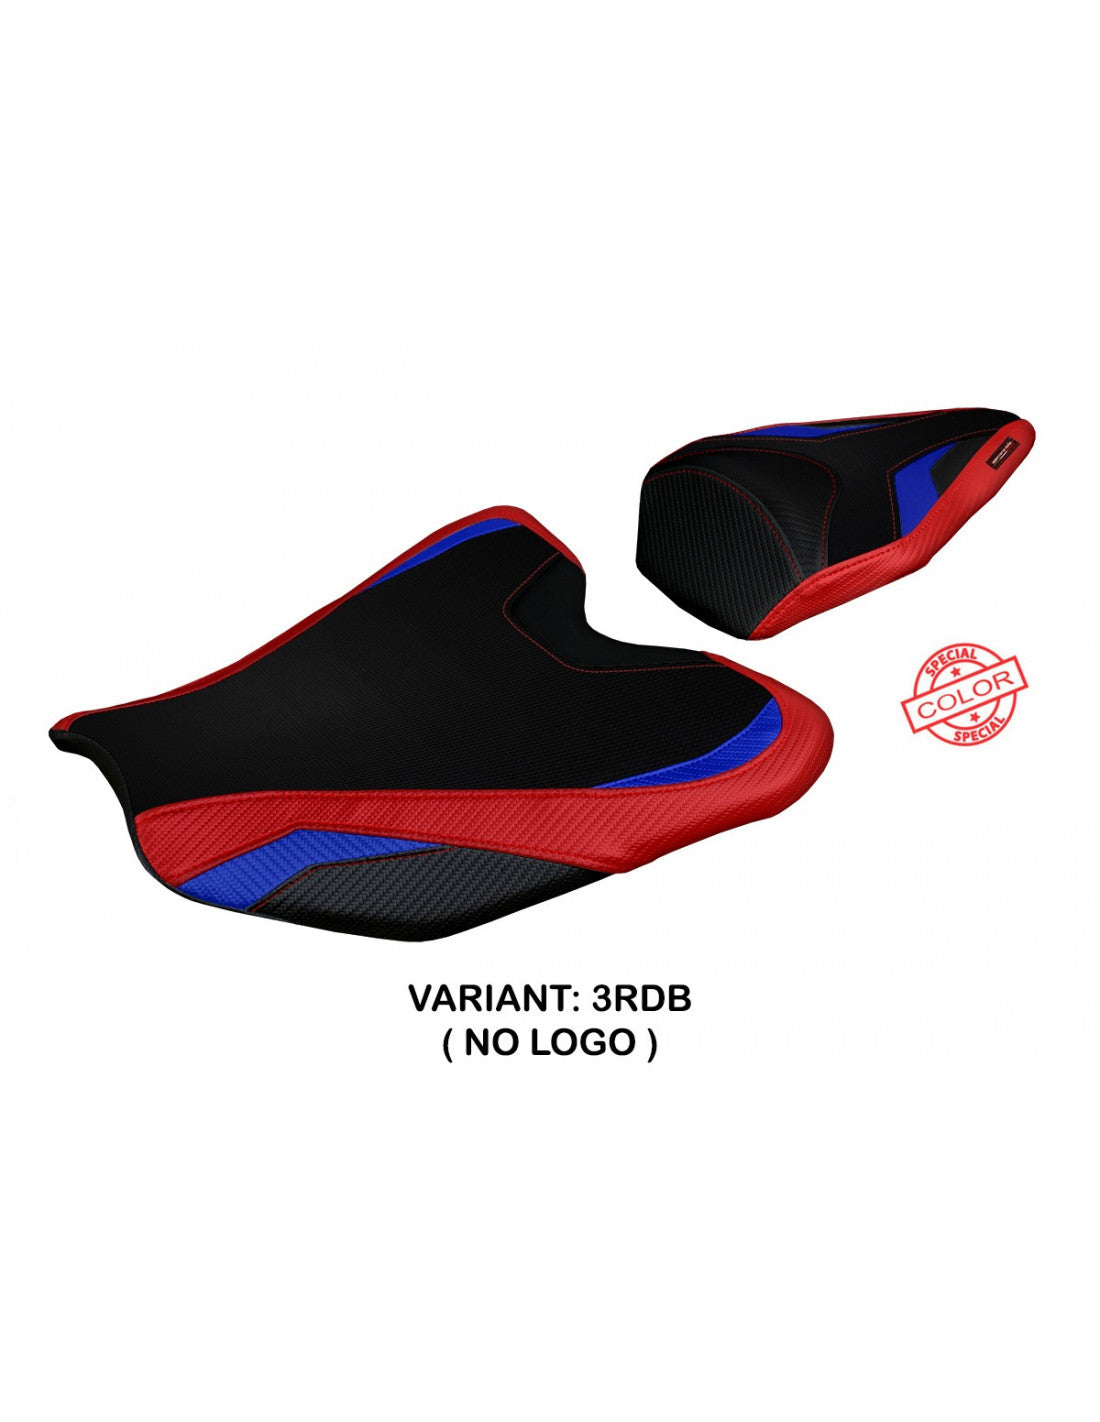 Tappezzeria Adrano Special Color Seat Cover for Honda CBR 1000RR